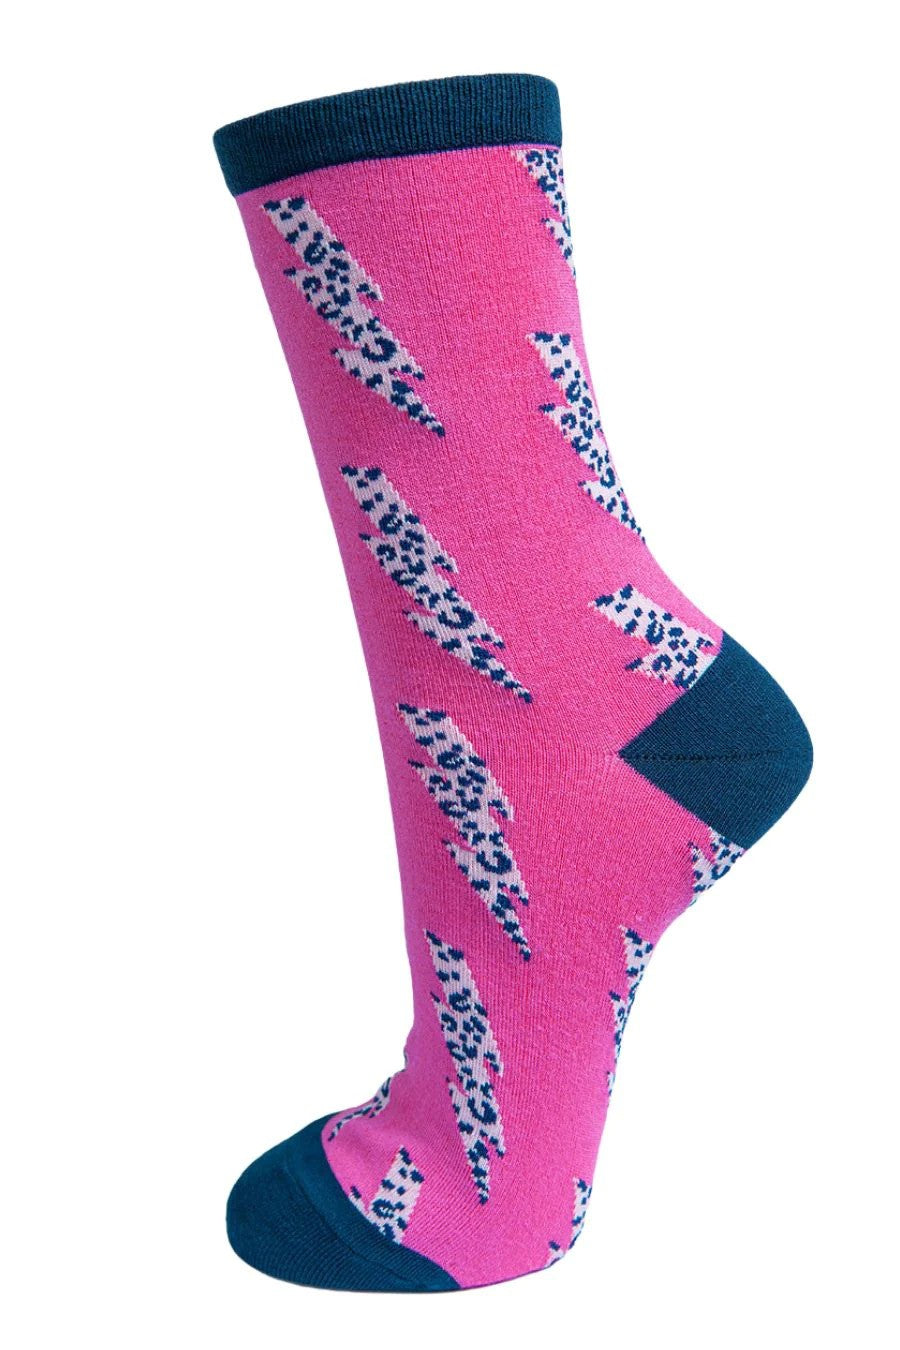 Pink & Navy Lightning Bamboo Socks